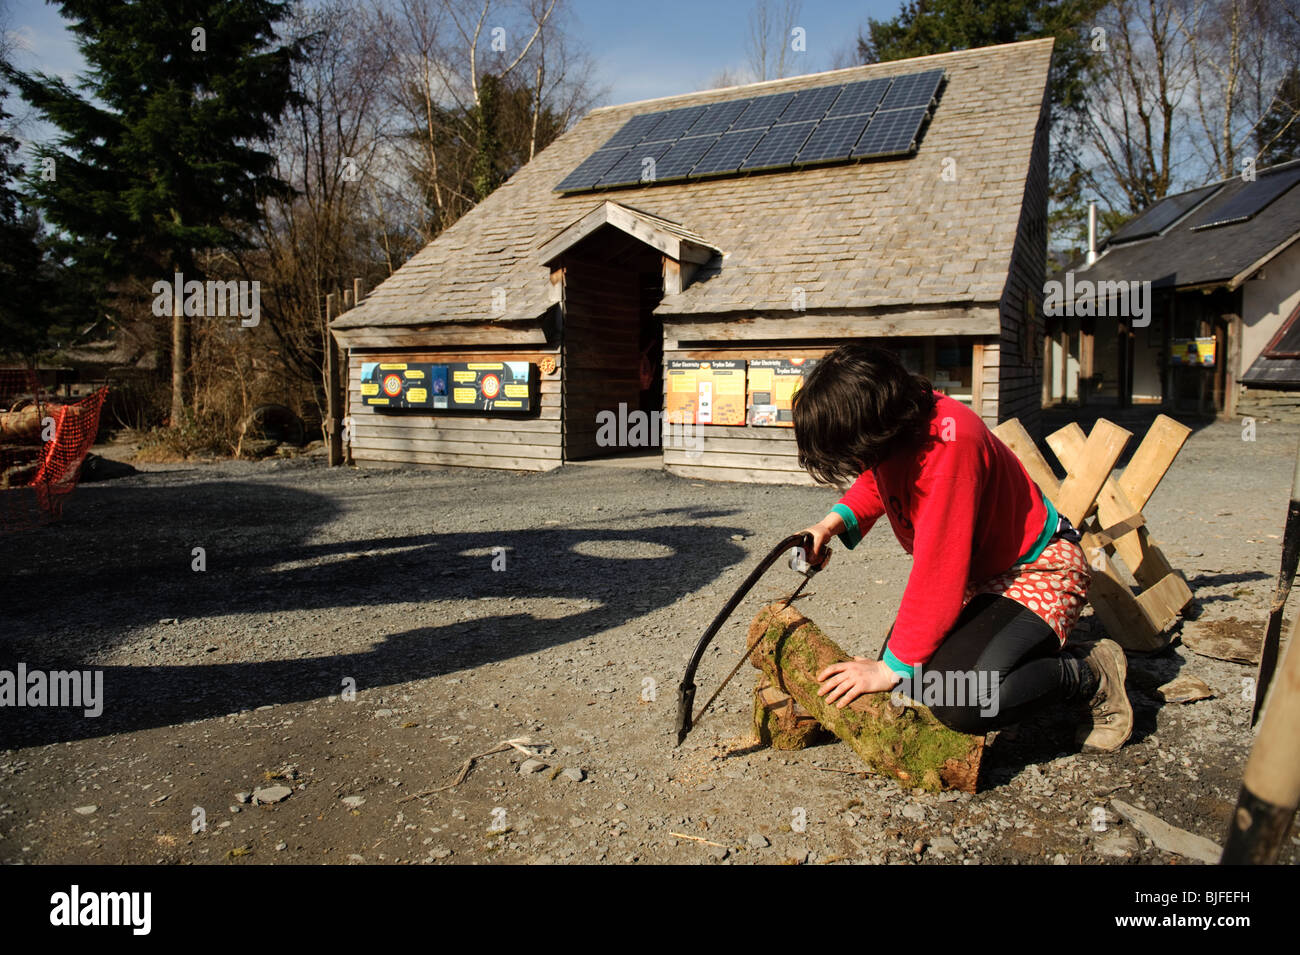 Una donna volontario di segatura di legno a CAT - Il Centro per la tecnologia alternativa, nei pressi di Machynlleth, north Wales UK Foto Stock